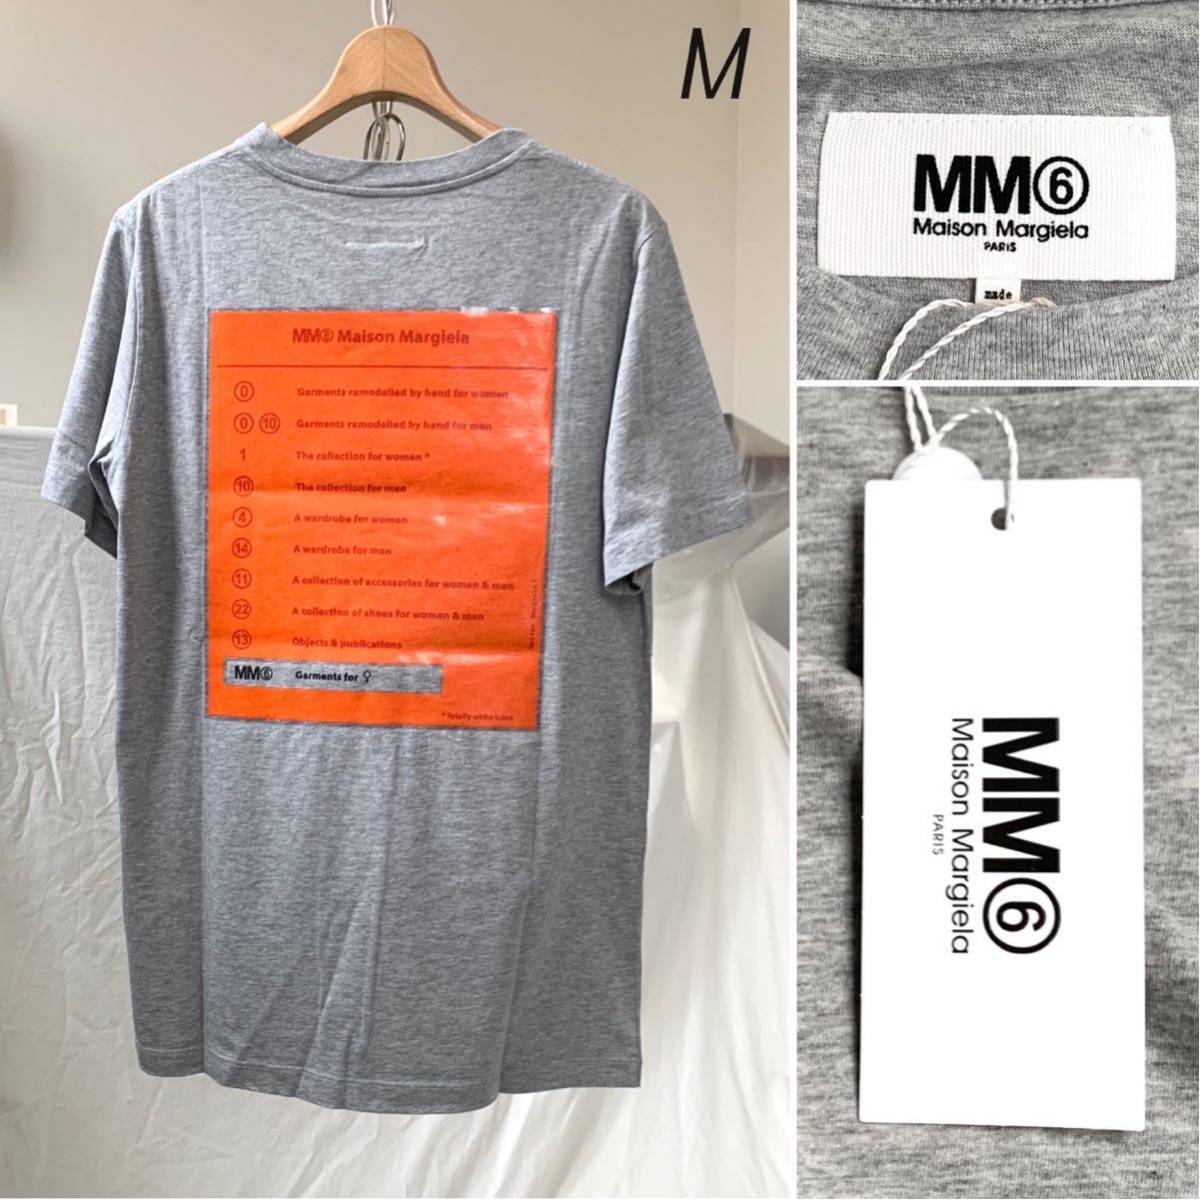 M 新品 2019AW MM6 エムエム6 メゾン マルジェラ バック ロゴ プリント オーバーサイズ Tシャツ ユニセックス メンズにも グレー